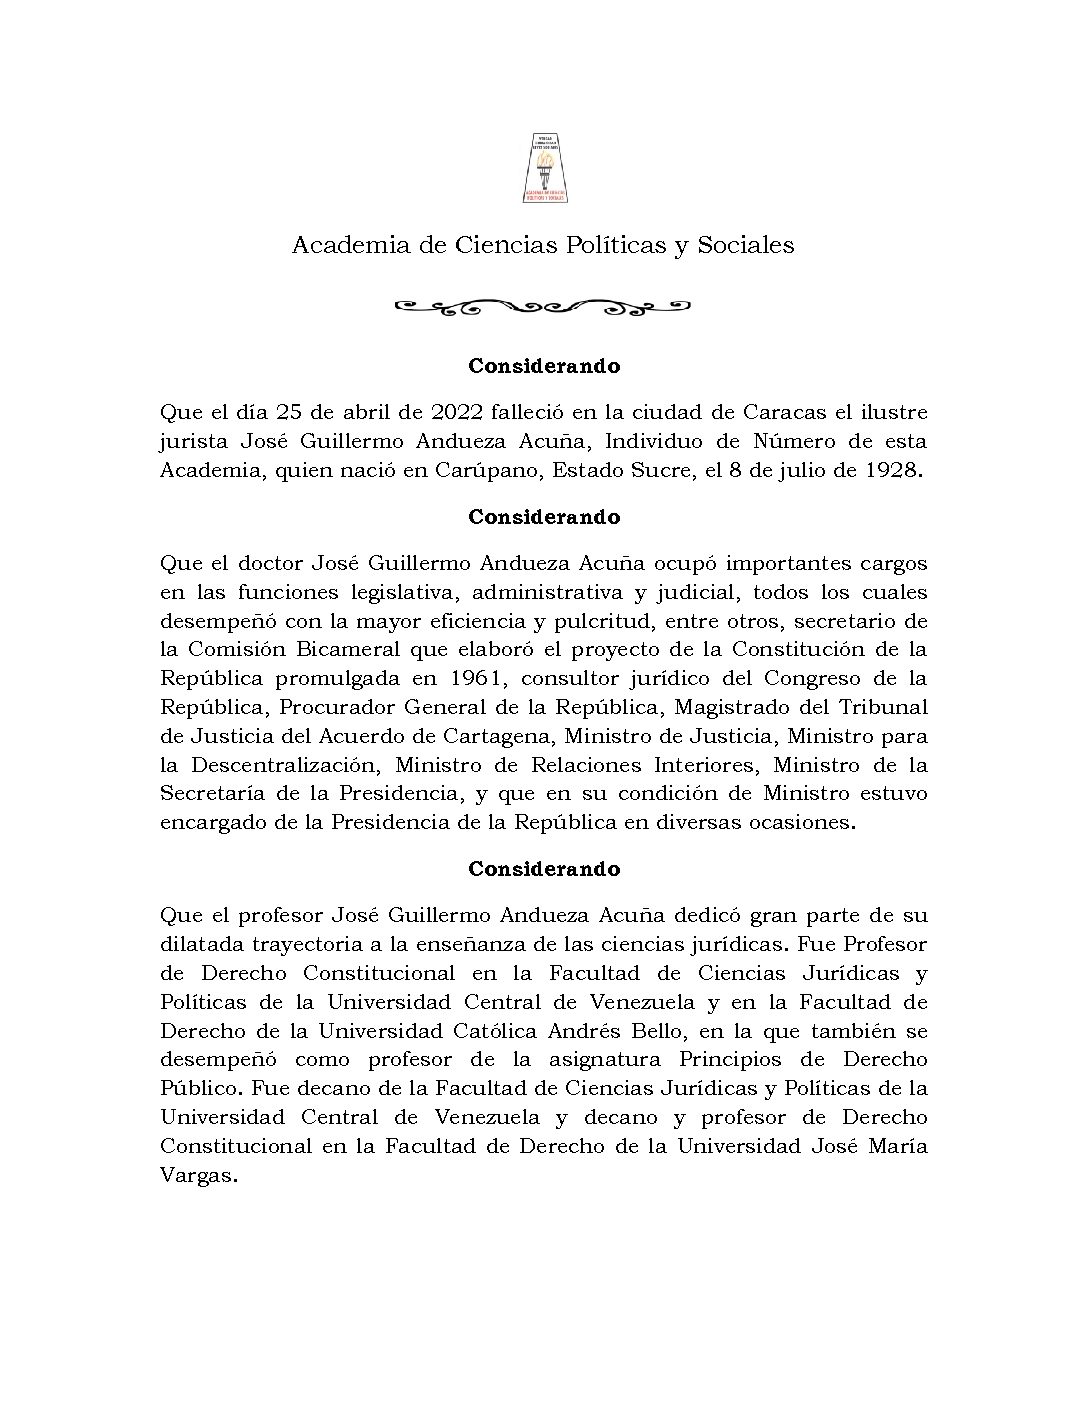 Acuerdo de duelo con ocasión del lamentable fallecimiento del Dr. José Guillermo Andueza Acuña